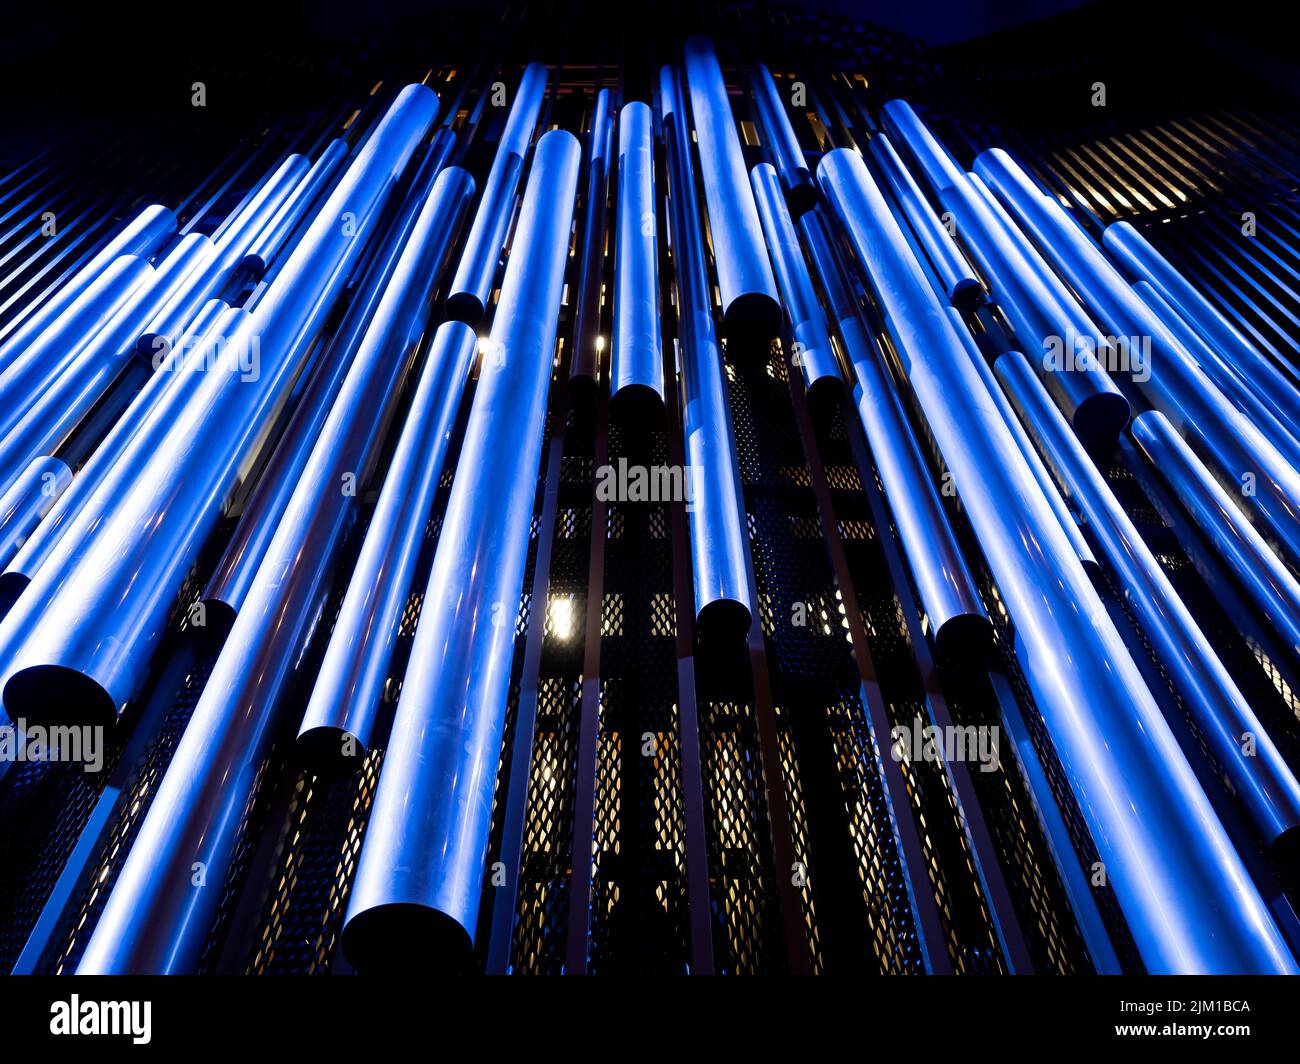 Pfeifenorgel in der Orgelhalle einer Philharmonie. Stahlrohre der Pfeifenorgel in der zeitgenössischen philharmonie. Blick auf Orgelpfeifen Stockfoto